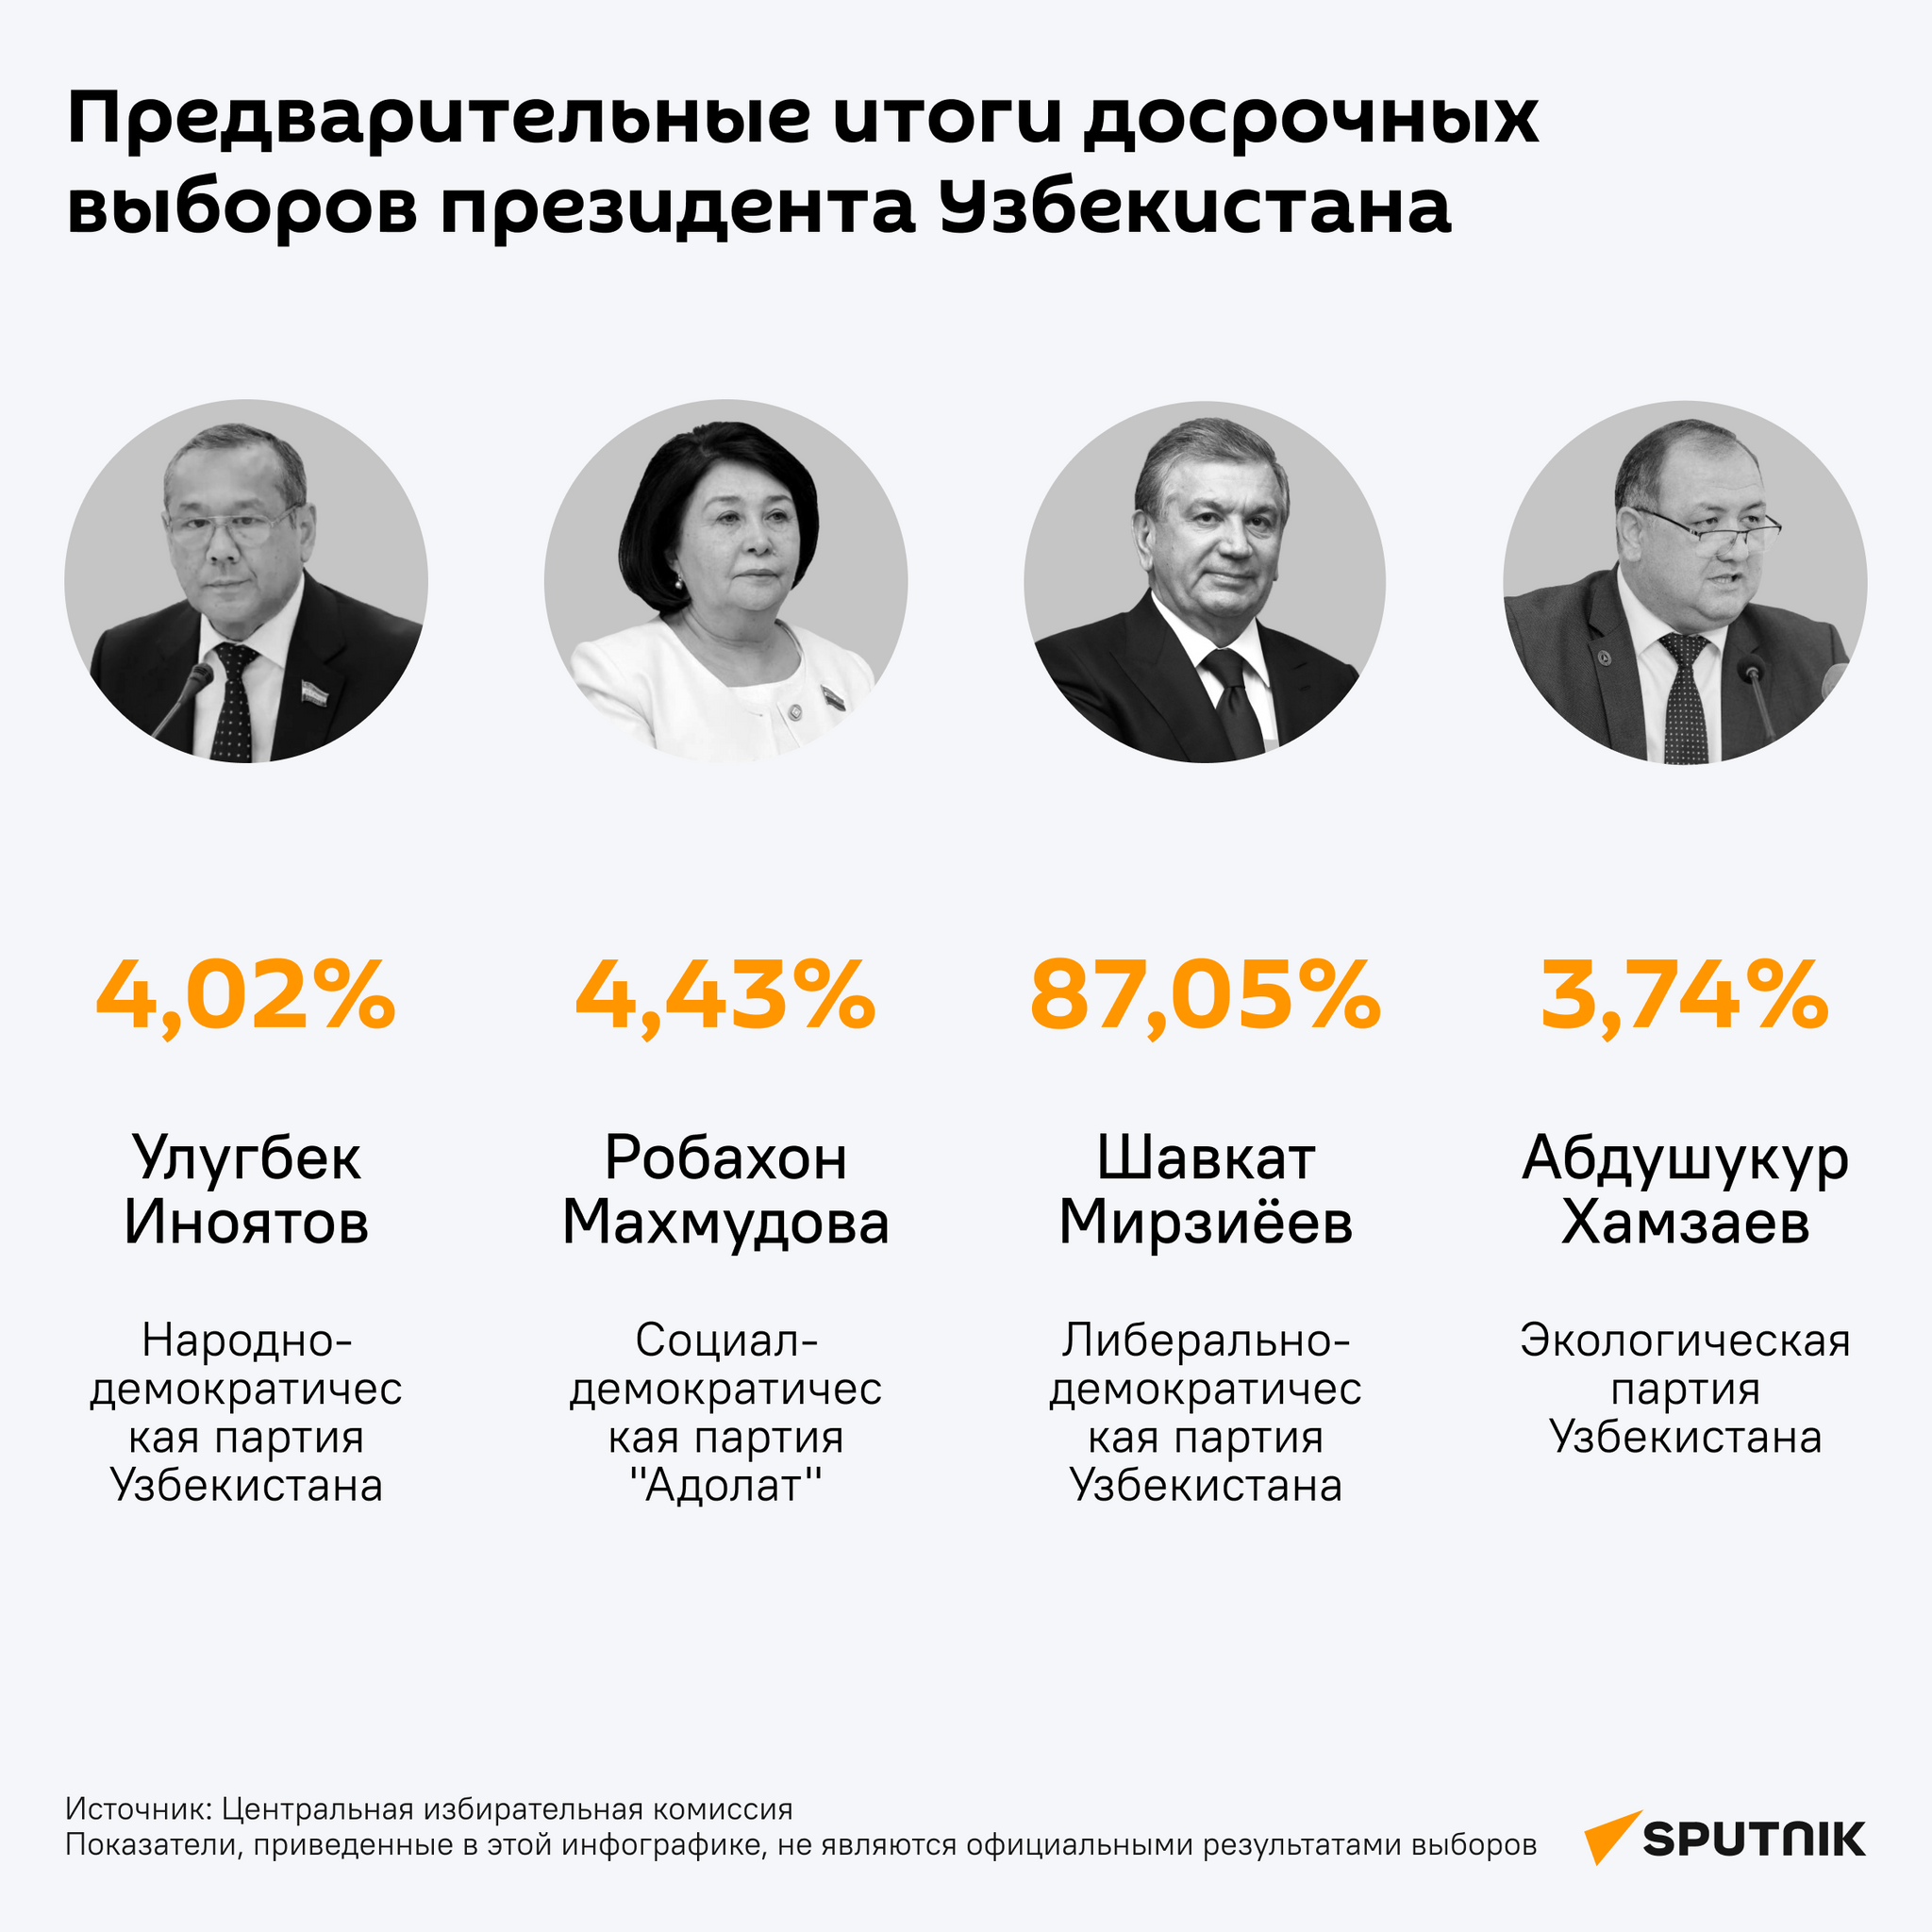 Предварительные итоги досрочных президентских выборов в Узбекистане - Sputnik Узбекистан